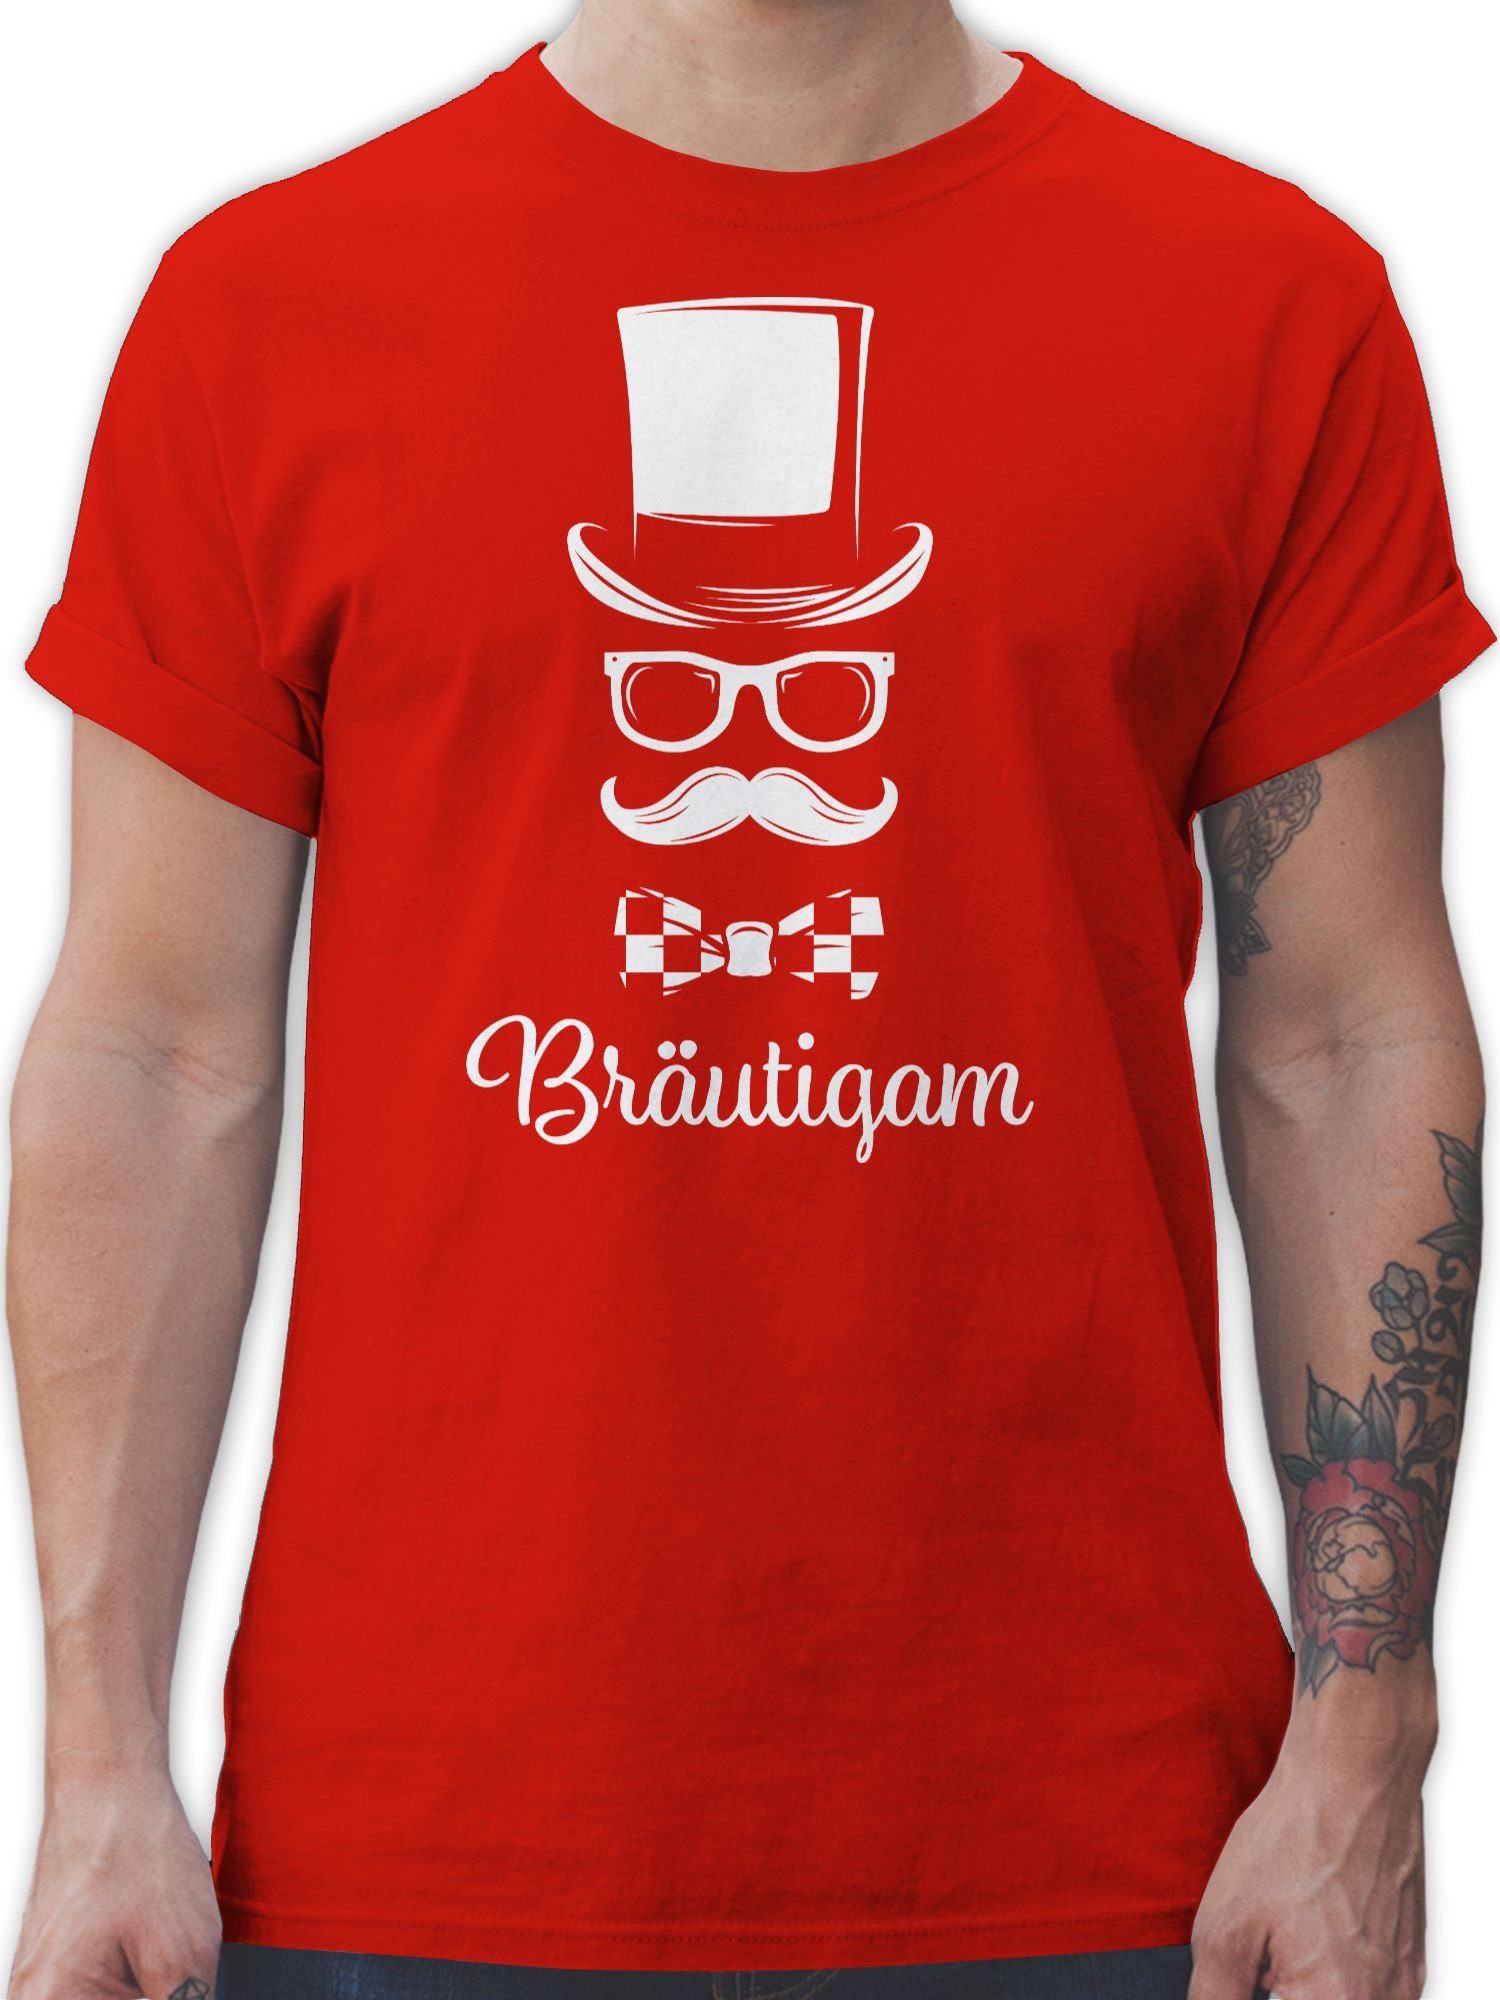 Shirtracer T-Shirt Bräutigam Gentleman Rot JGA Männer 02 Schreibschrift